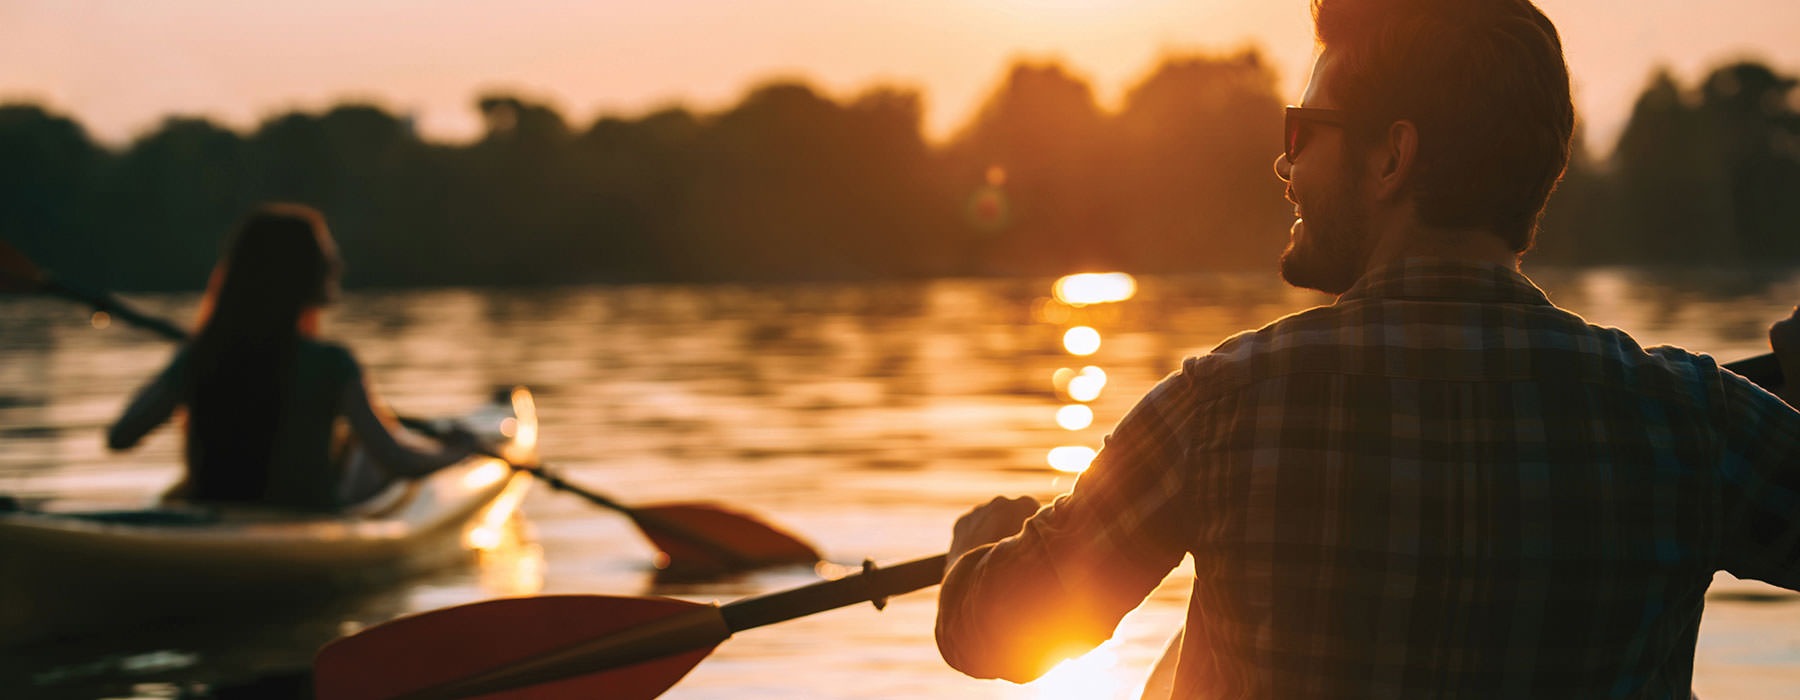 people kayaking on a lake during sunset